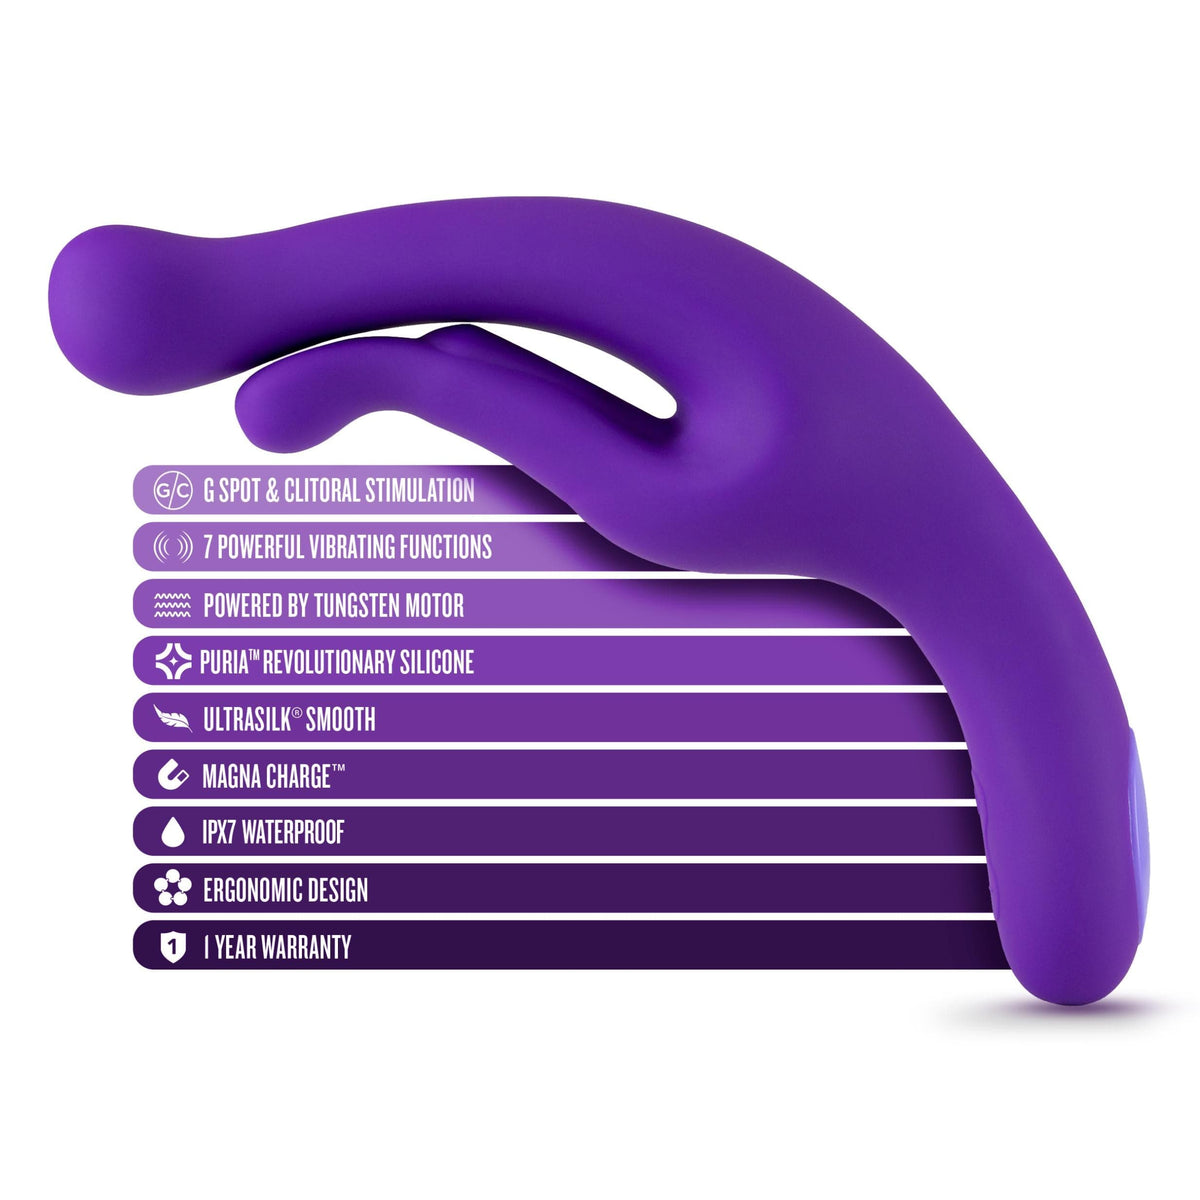 wellness g wave vibrator purple